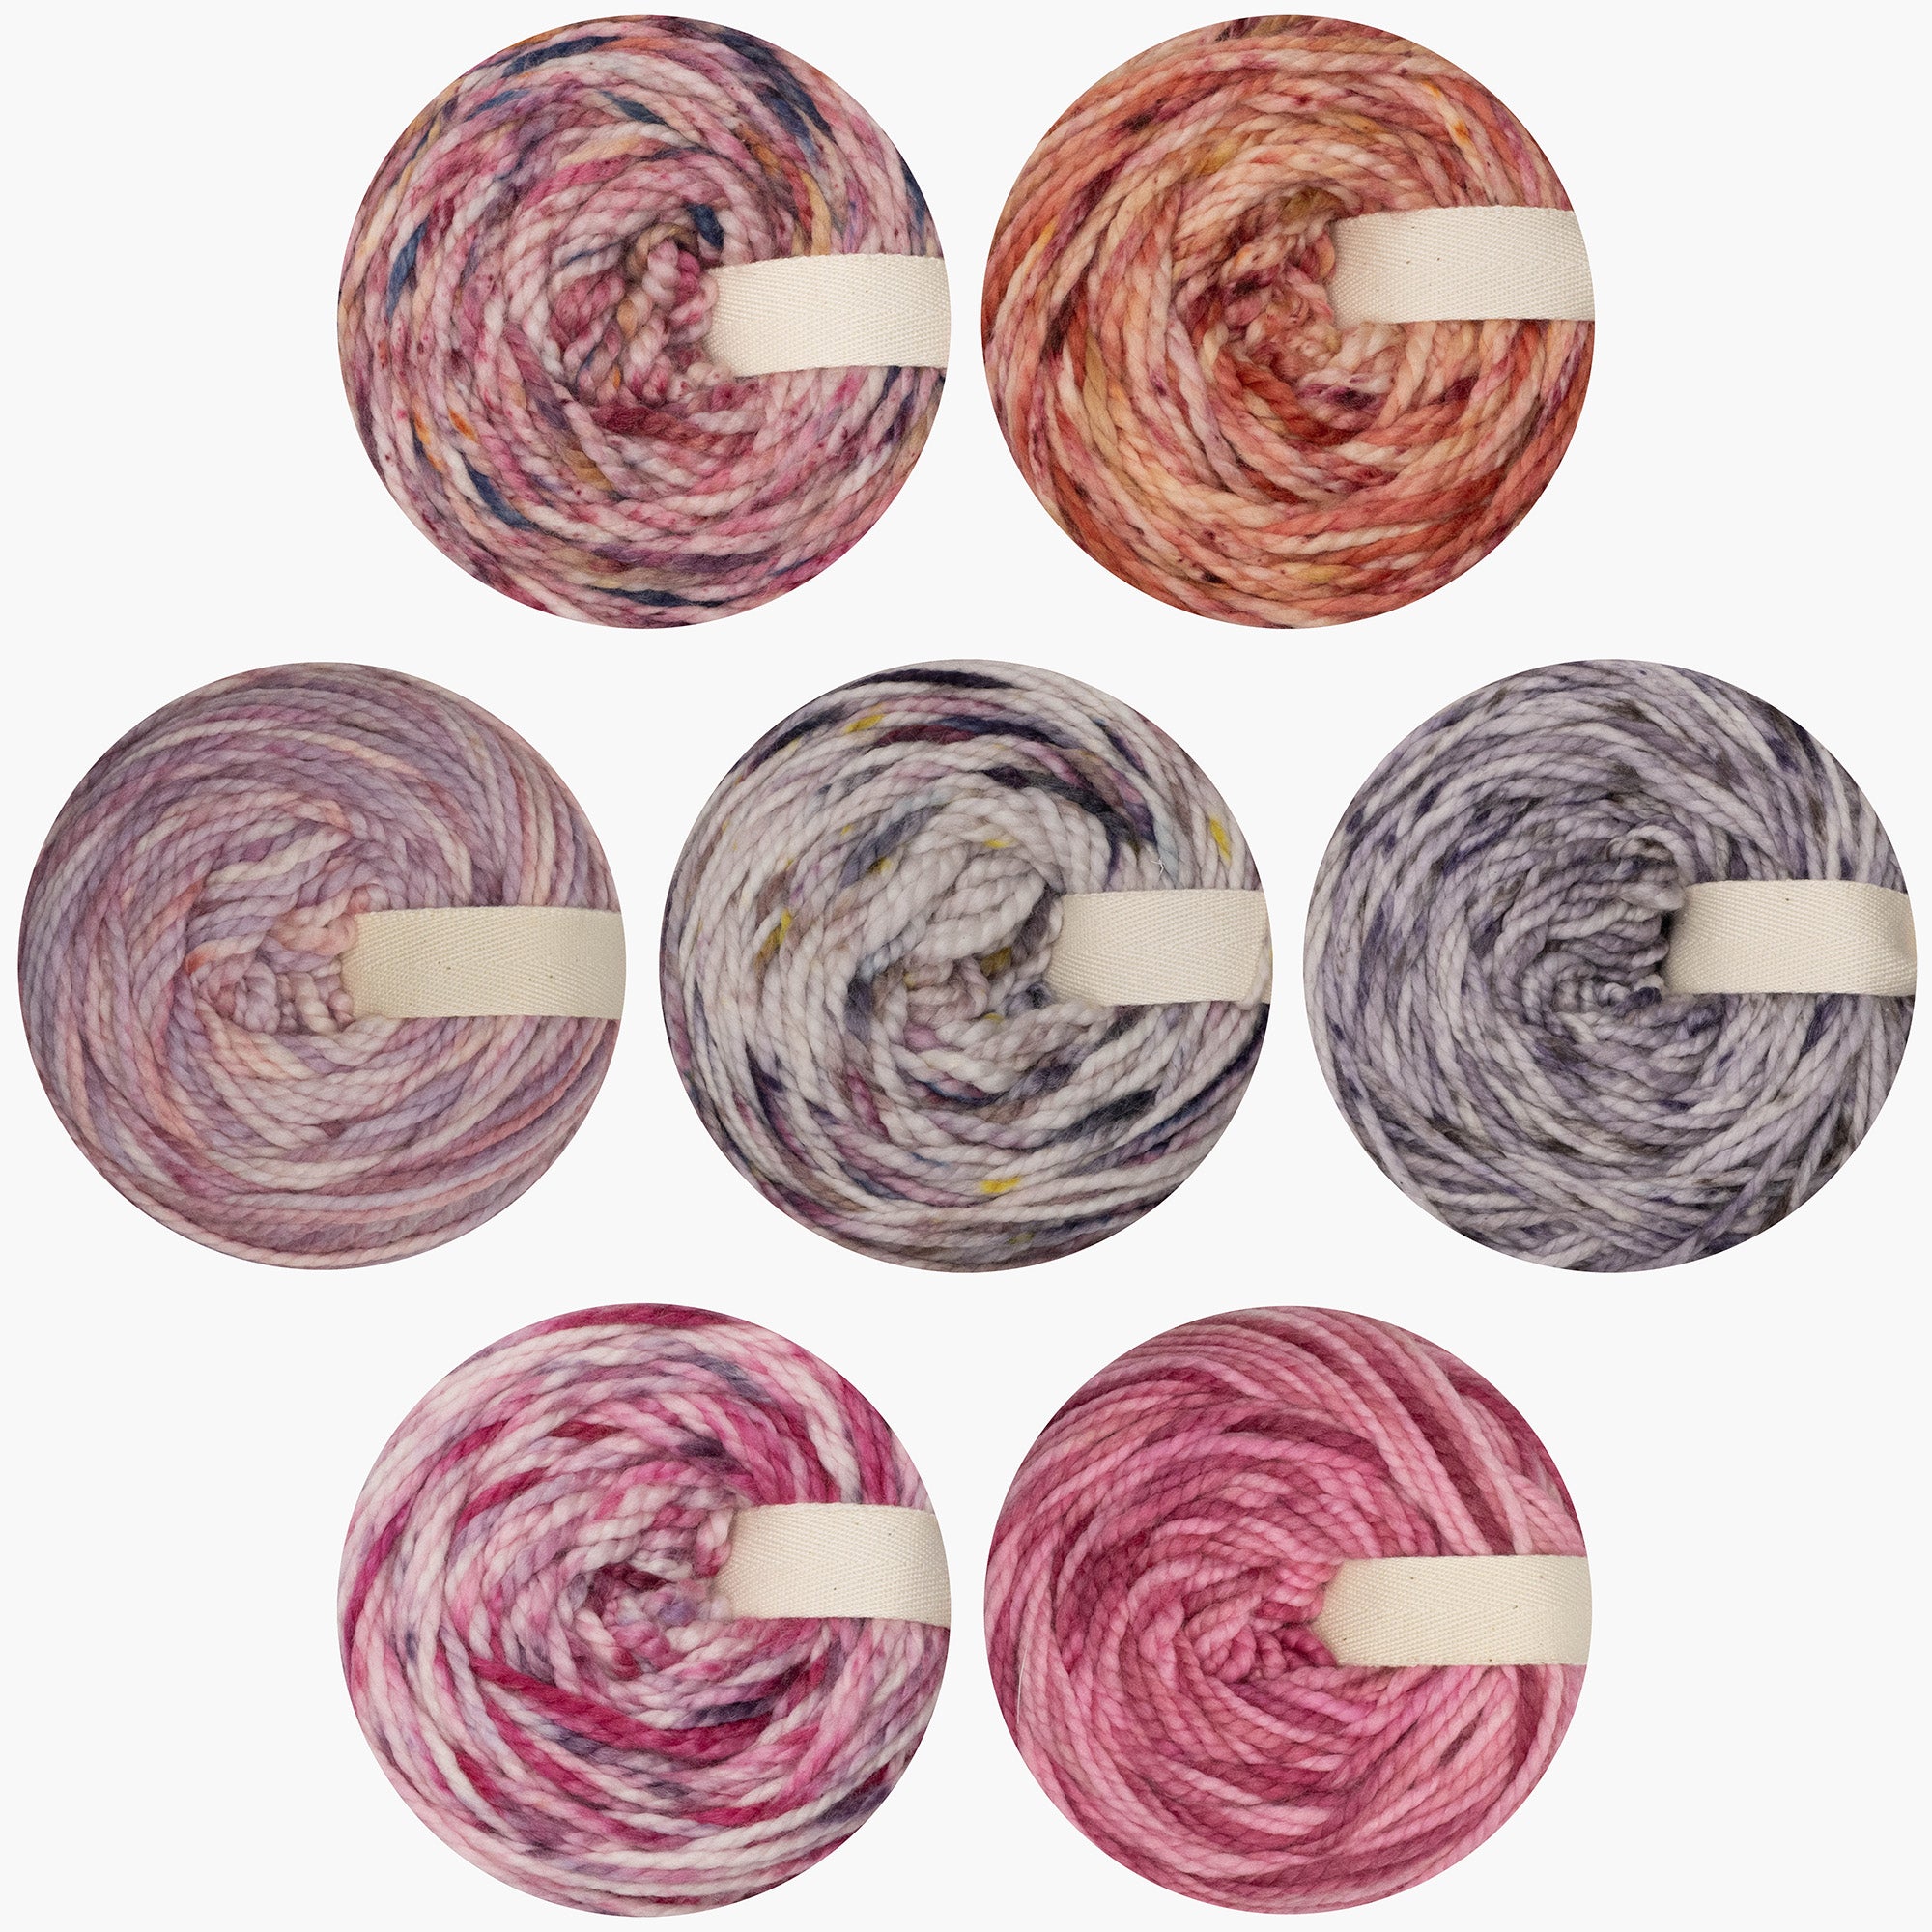 Naturally dyed merino/nylon Bulk yarn 120g